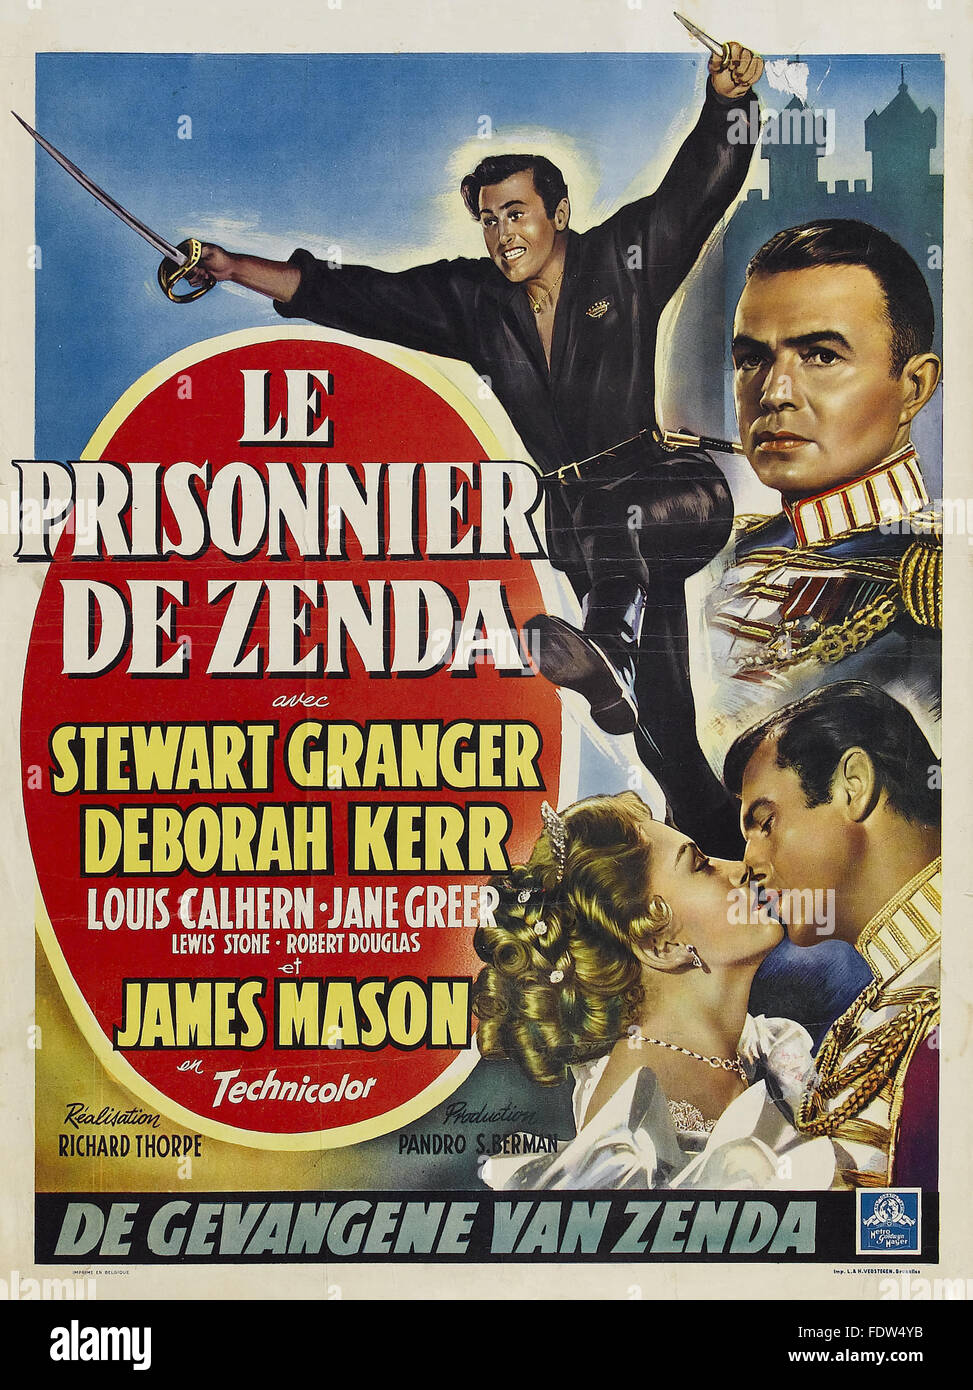 Prisionero de Zenda, La (1952) - póster de película francesa Foto de stock